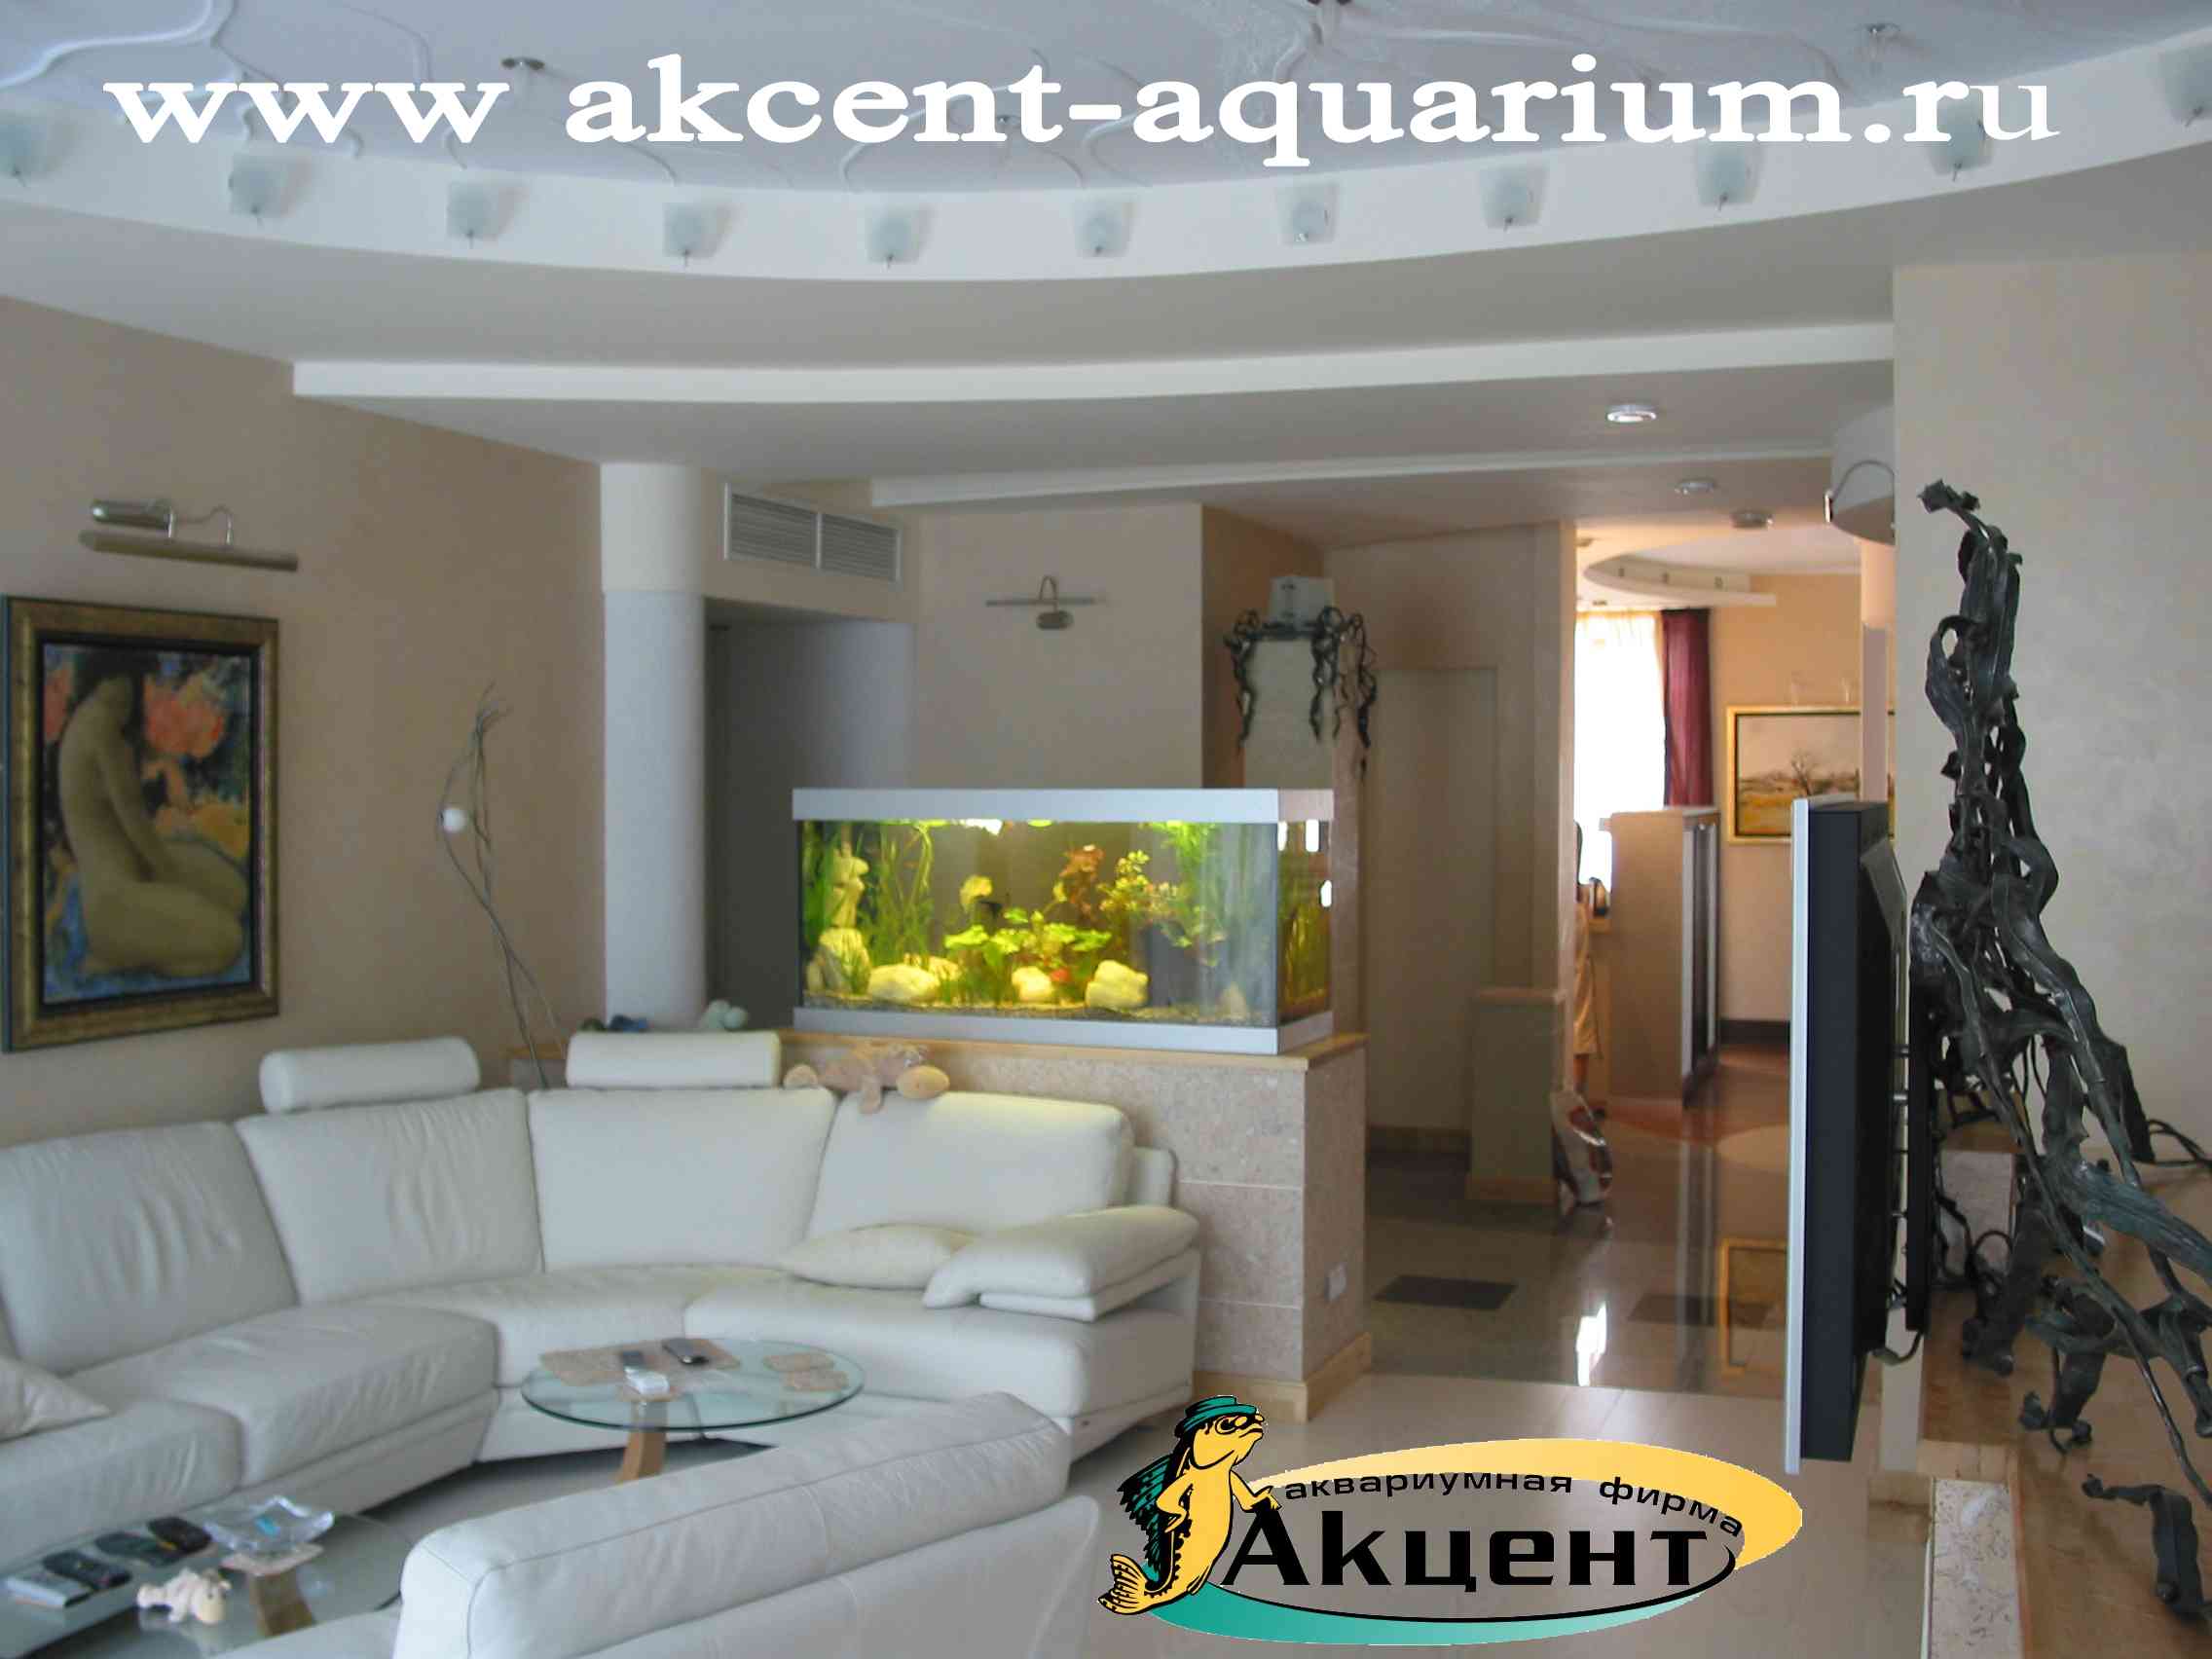 Акцент-Аквариум, аквариум просмотровый 300 литров с живыми растениями